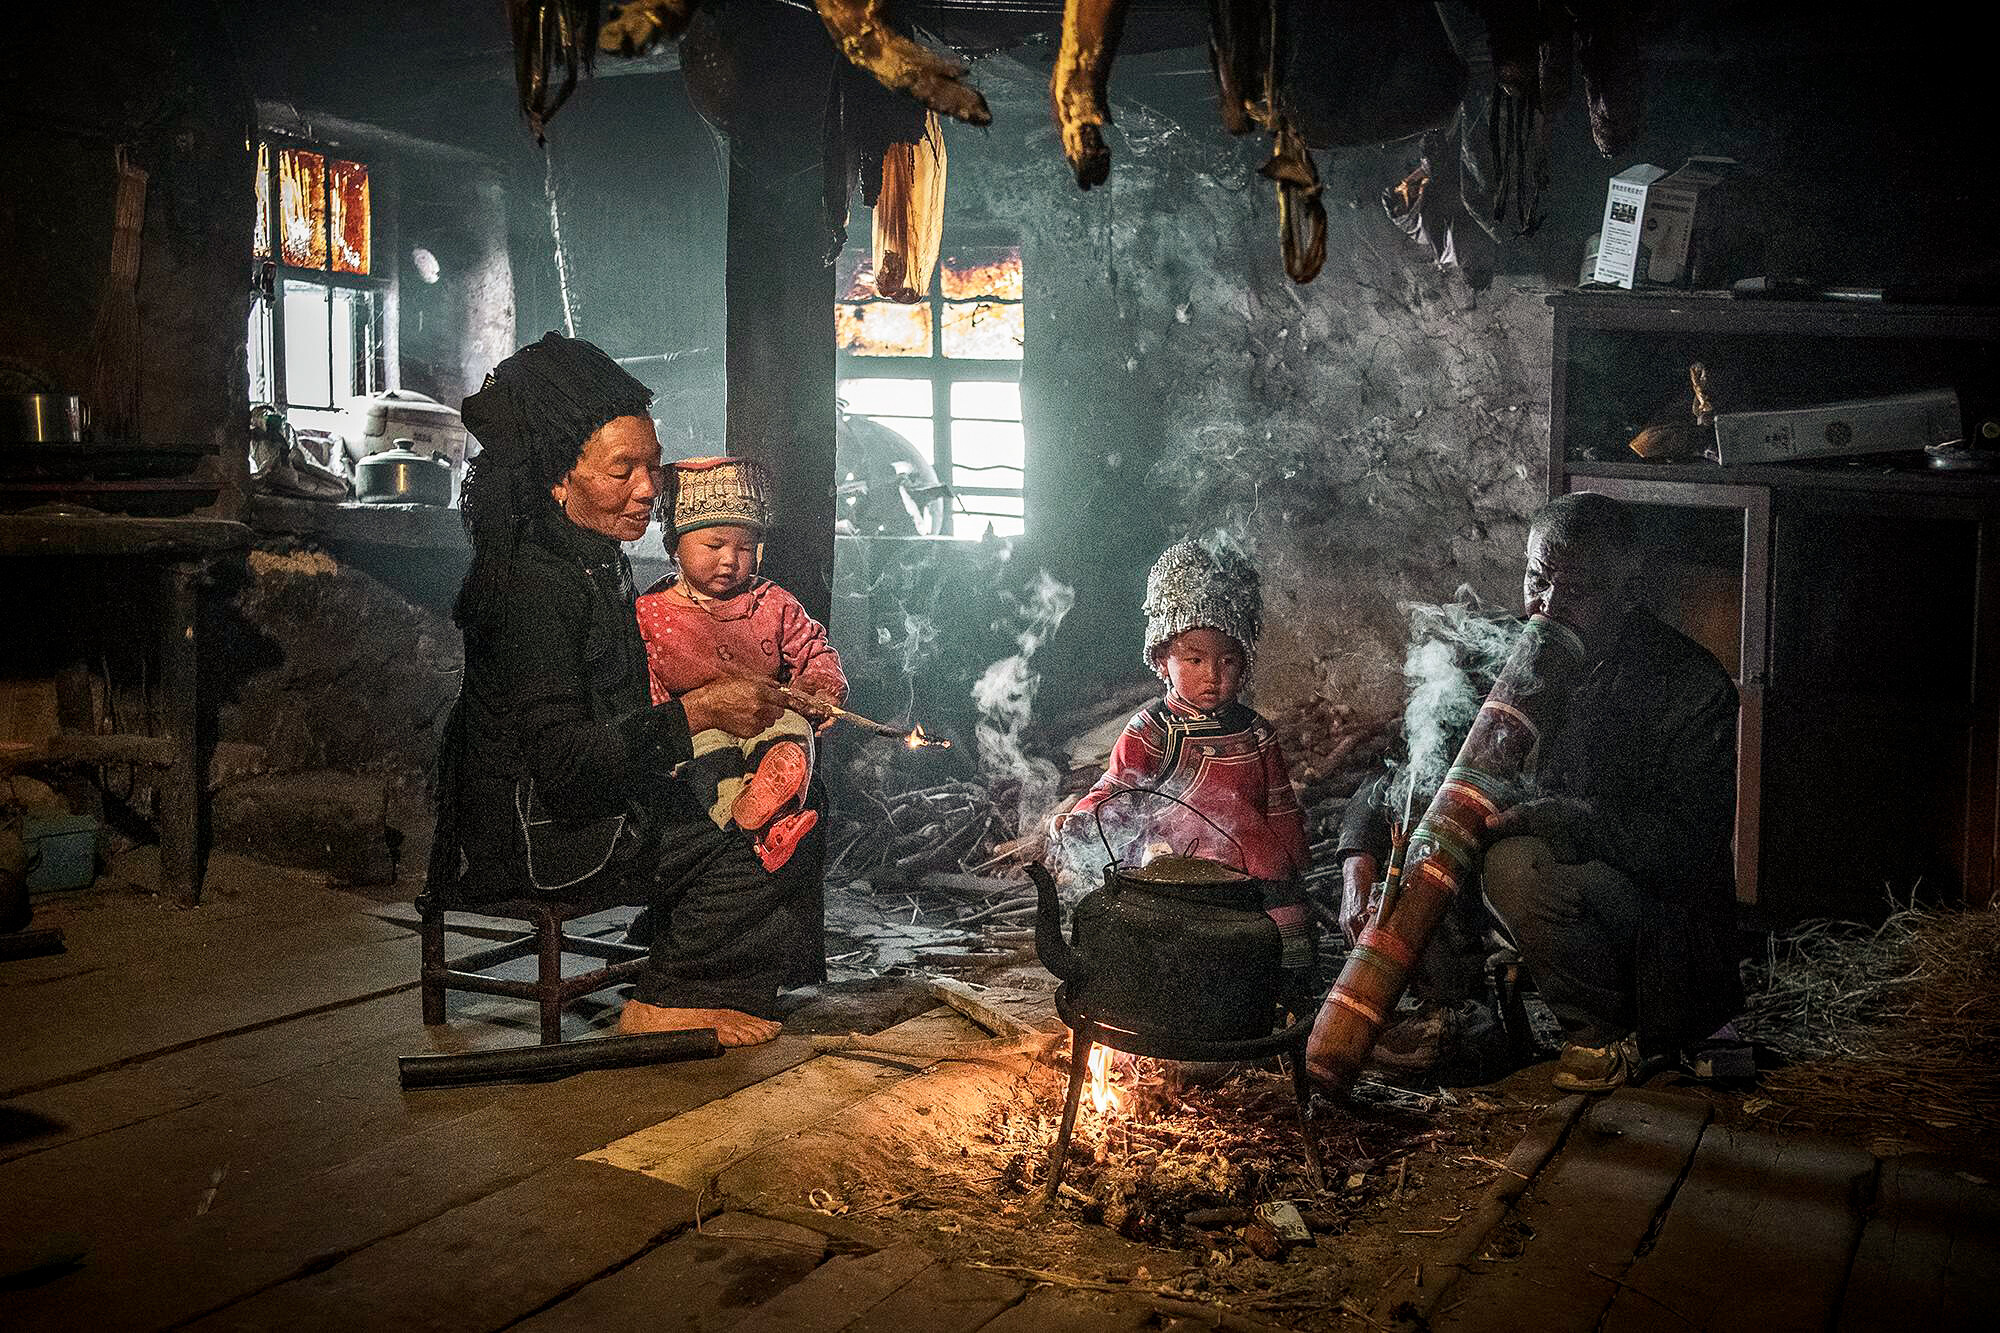 Семья в рисоводческой общине, Юаньян, Китай. Фотограф Fong Chan Onn